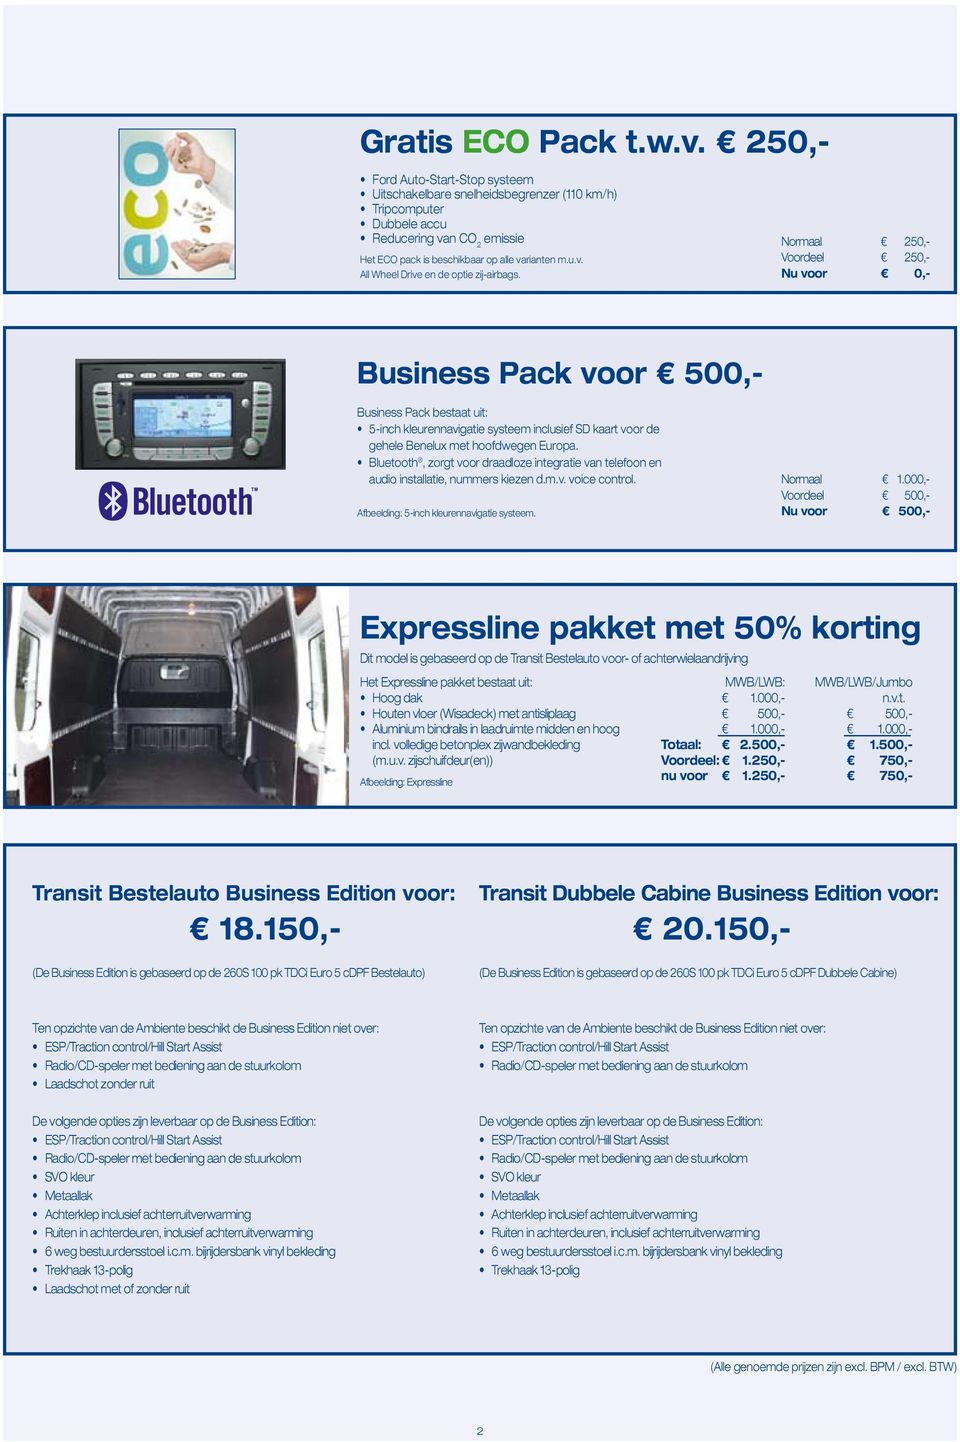 Normaal 250,- Voordeel 250,- Nu voor 0,- Business Pack voor 500,- Business Pack bestaat uit: 5-inch kleurennavigatie systeem inclusief SD kaart voor de gehele Benelux met hoofdwegen Europa.